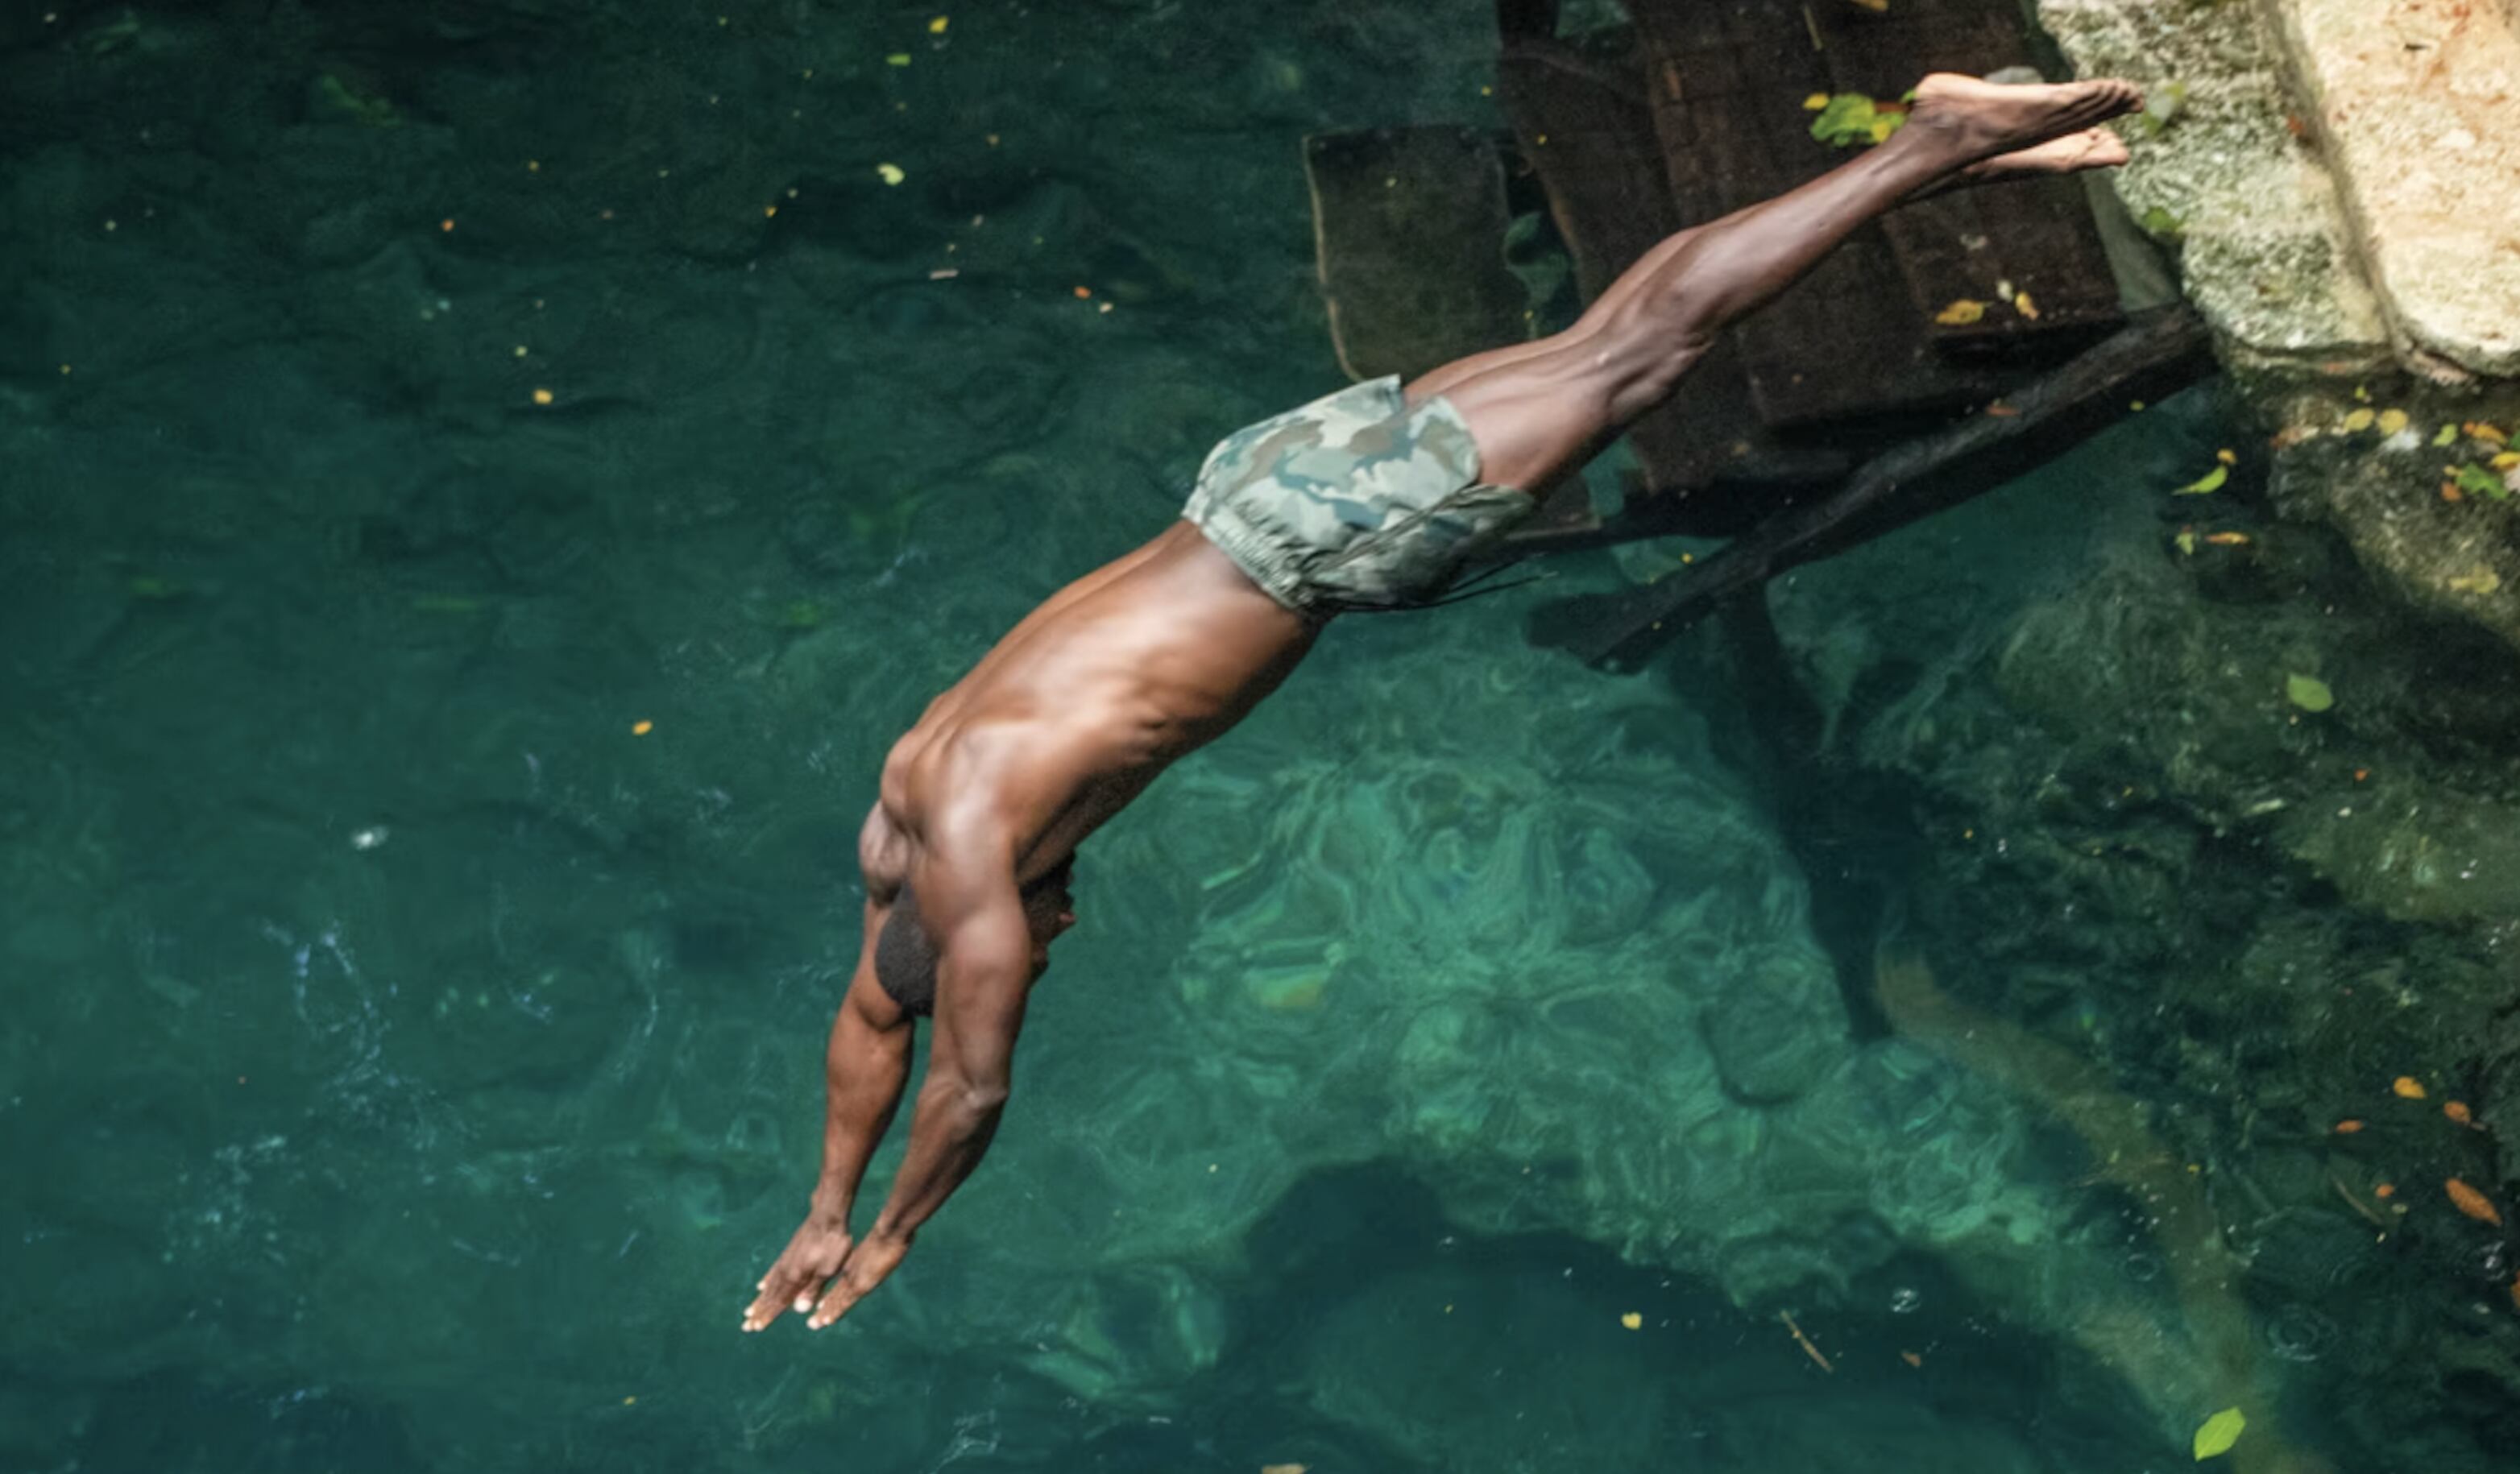 Un joven se arroja en clavado al agua en una imagen de "Fotografi?a Maroma", muestra de Miami Art Week